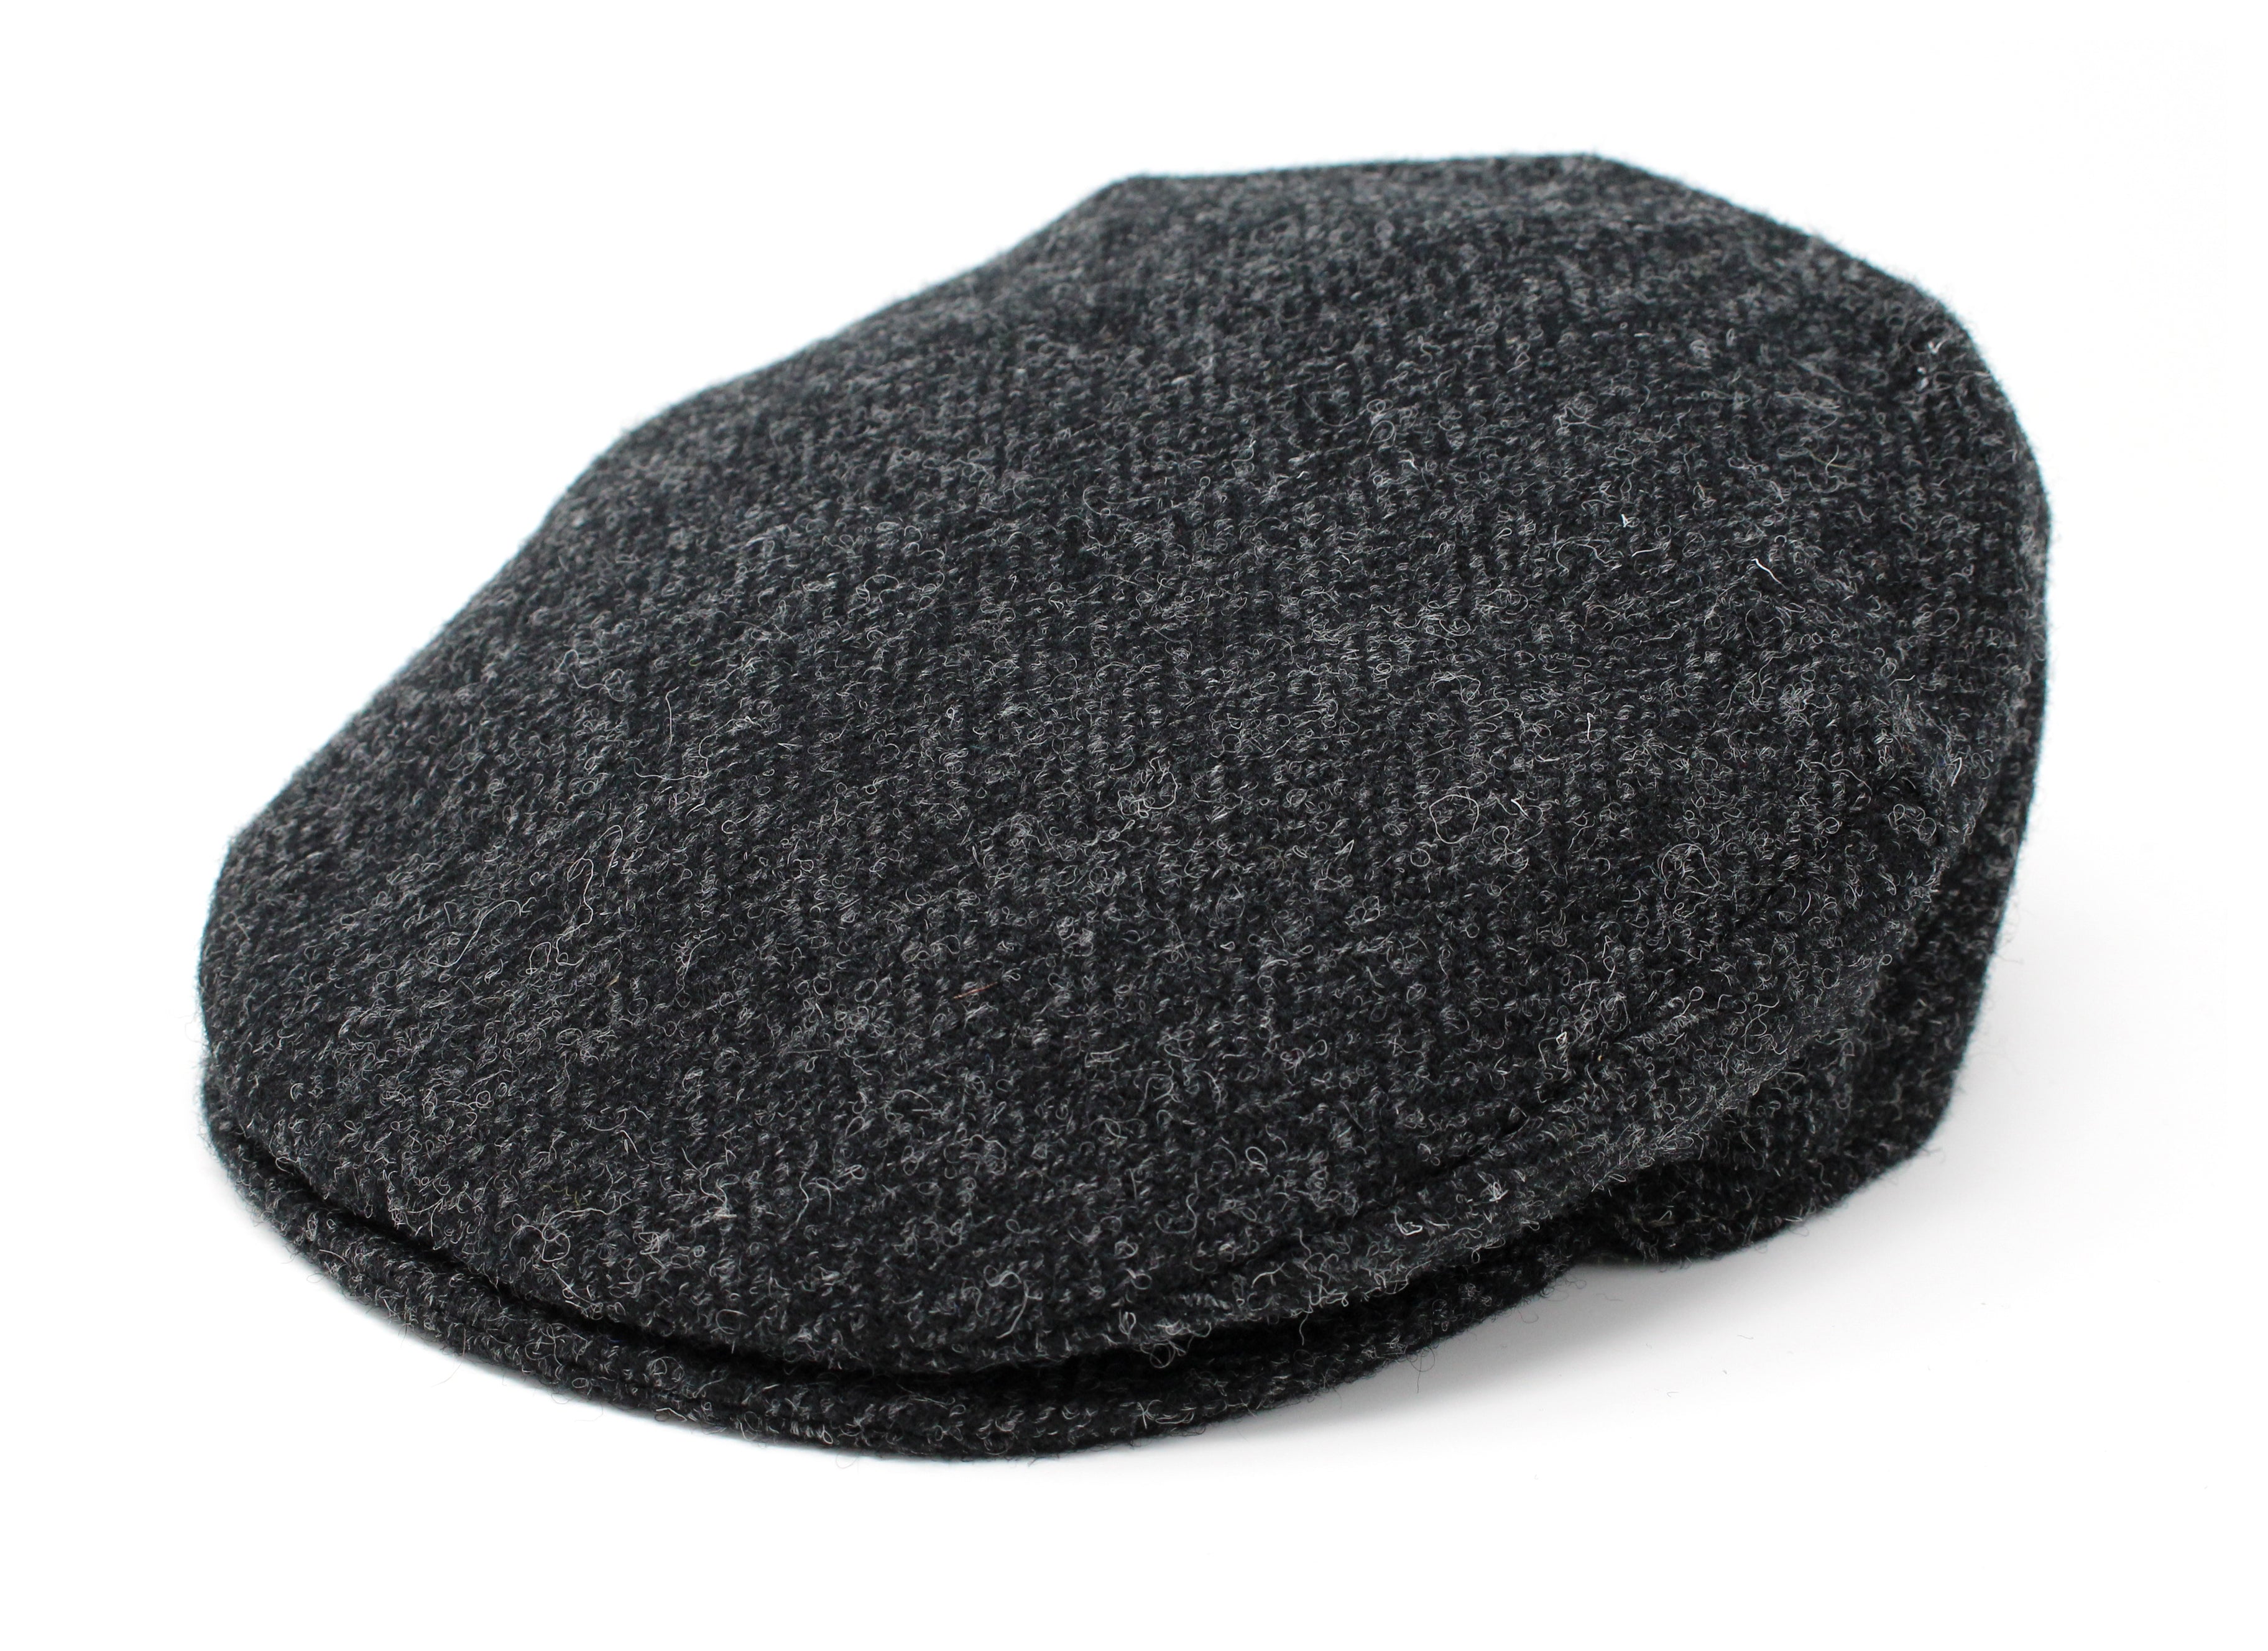 Hanna Hats Vintage Cap Tweed - Black & Charcoal Herringbone - Harris Scottish Tweed